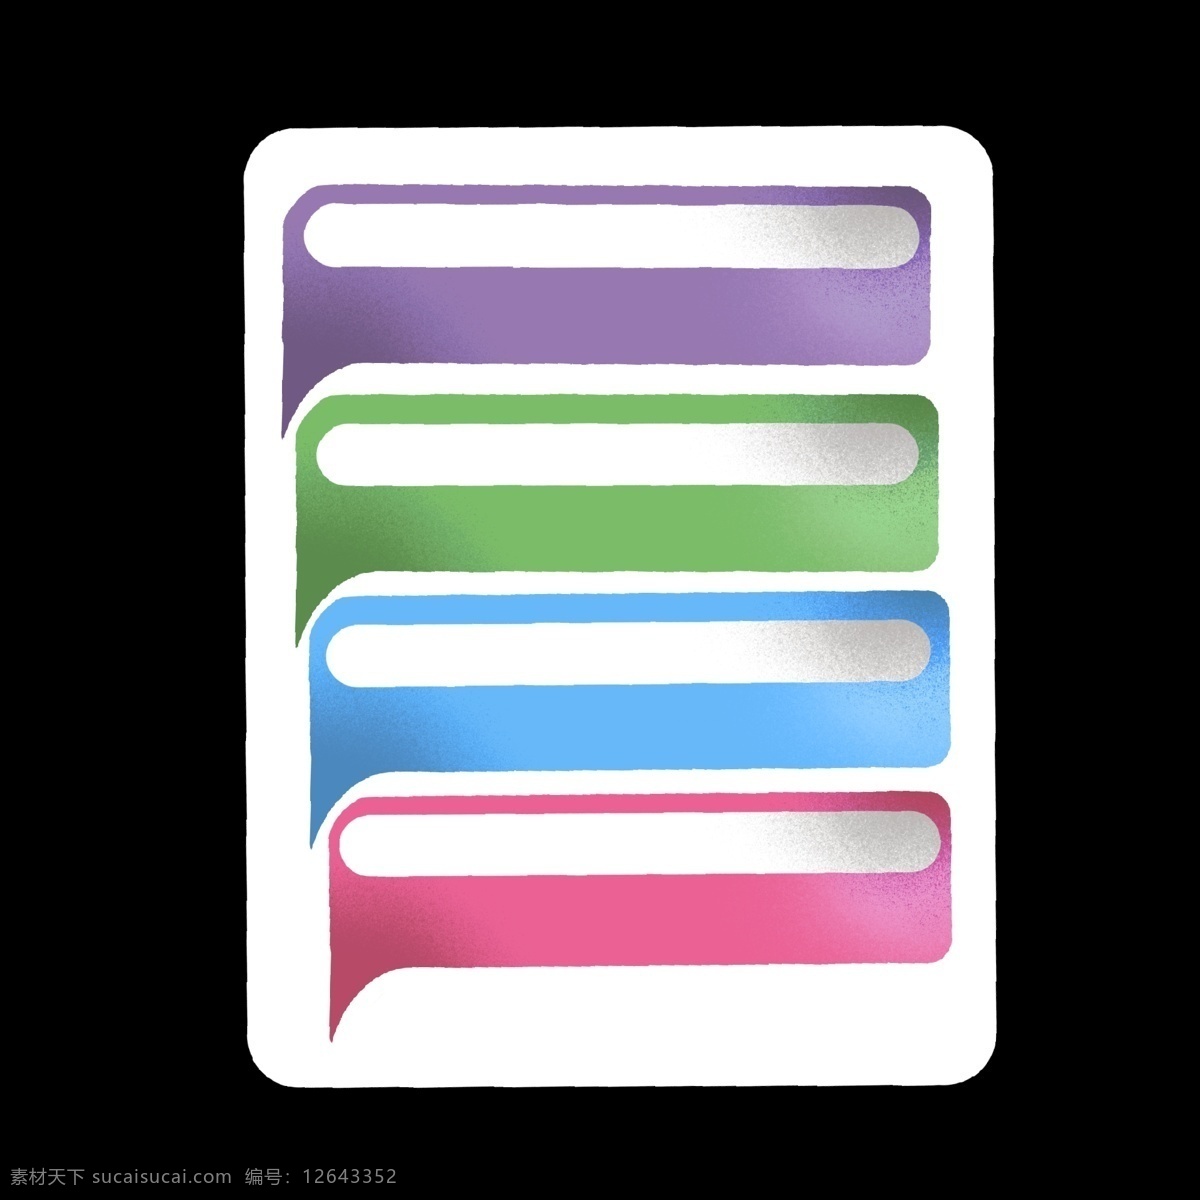 彩色 对话框 样式 分类 标识 分别 类目表 不同 区别 区分开 ppt专用 卡通 简单 简约 简洁